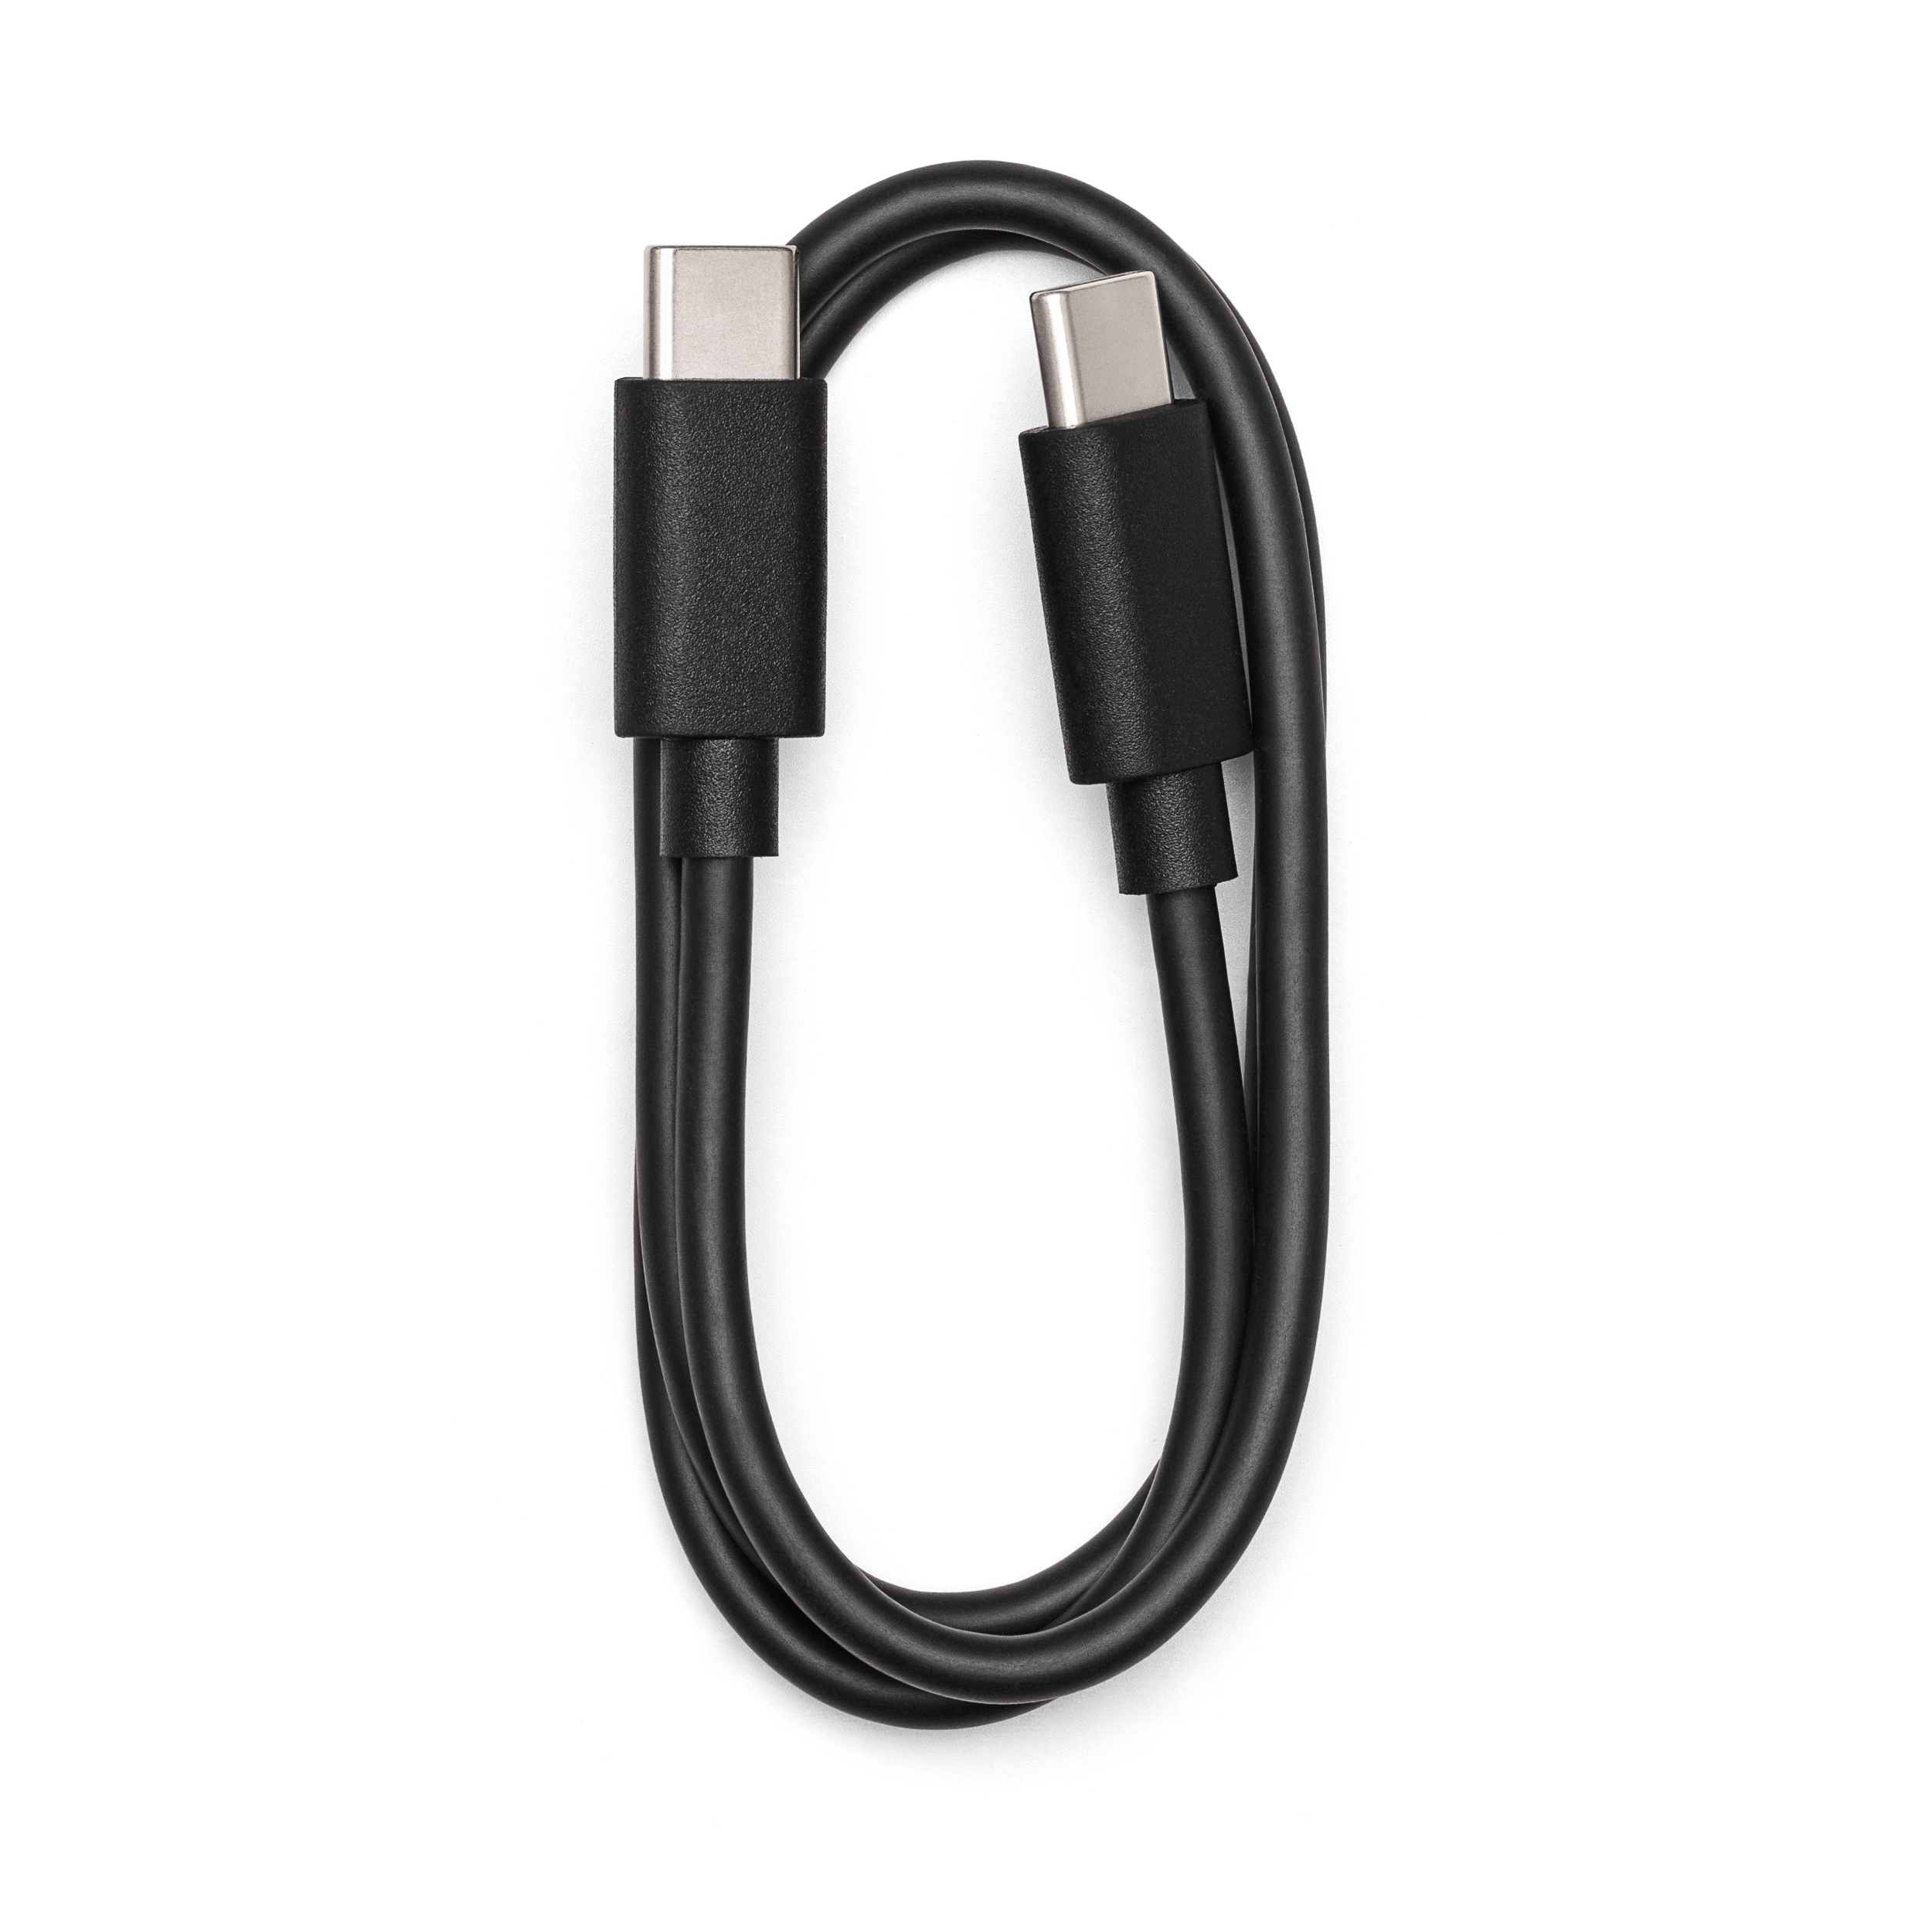 Imagem do cabo USB que acompanha o produto